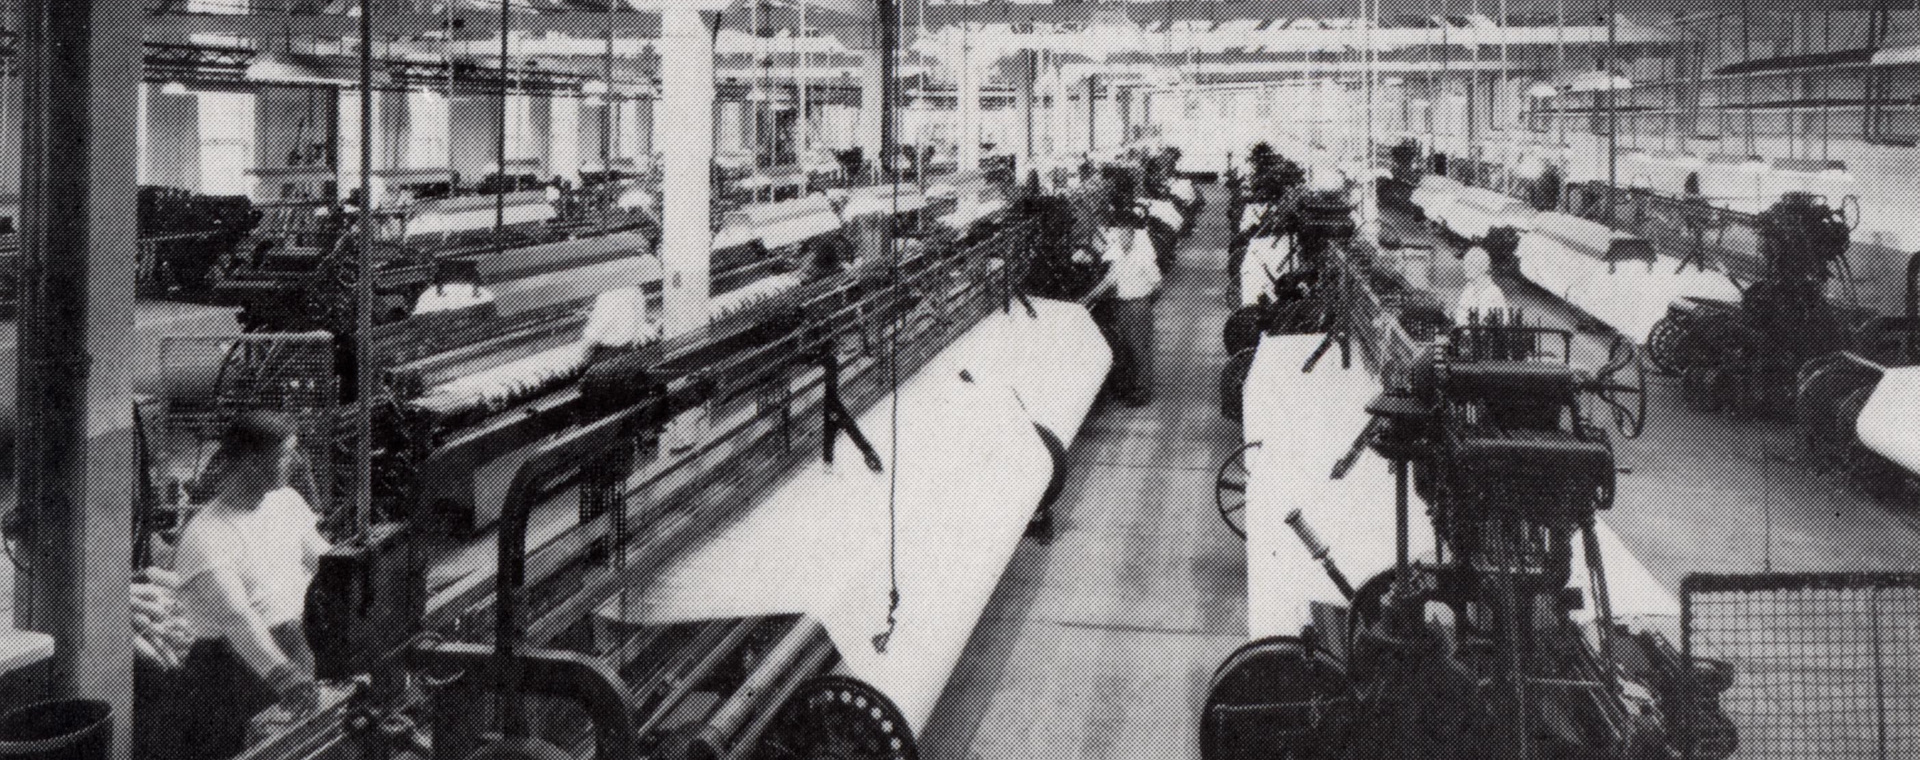 Un sol d'usine avec plusieurs rangées de machines à tisser.